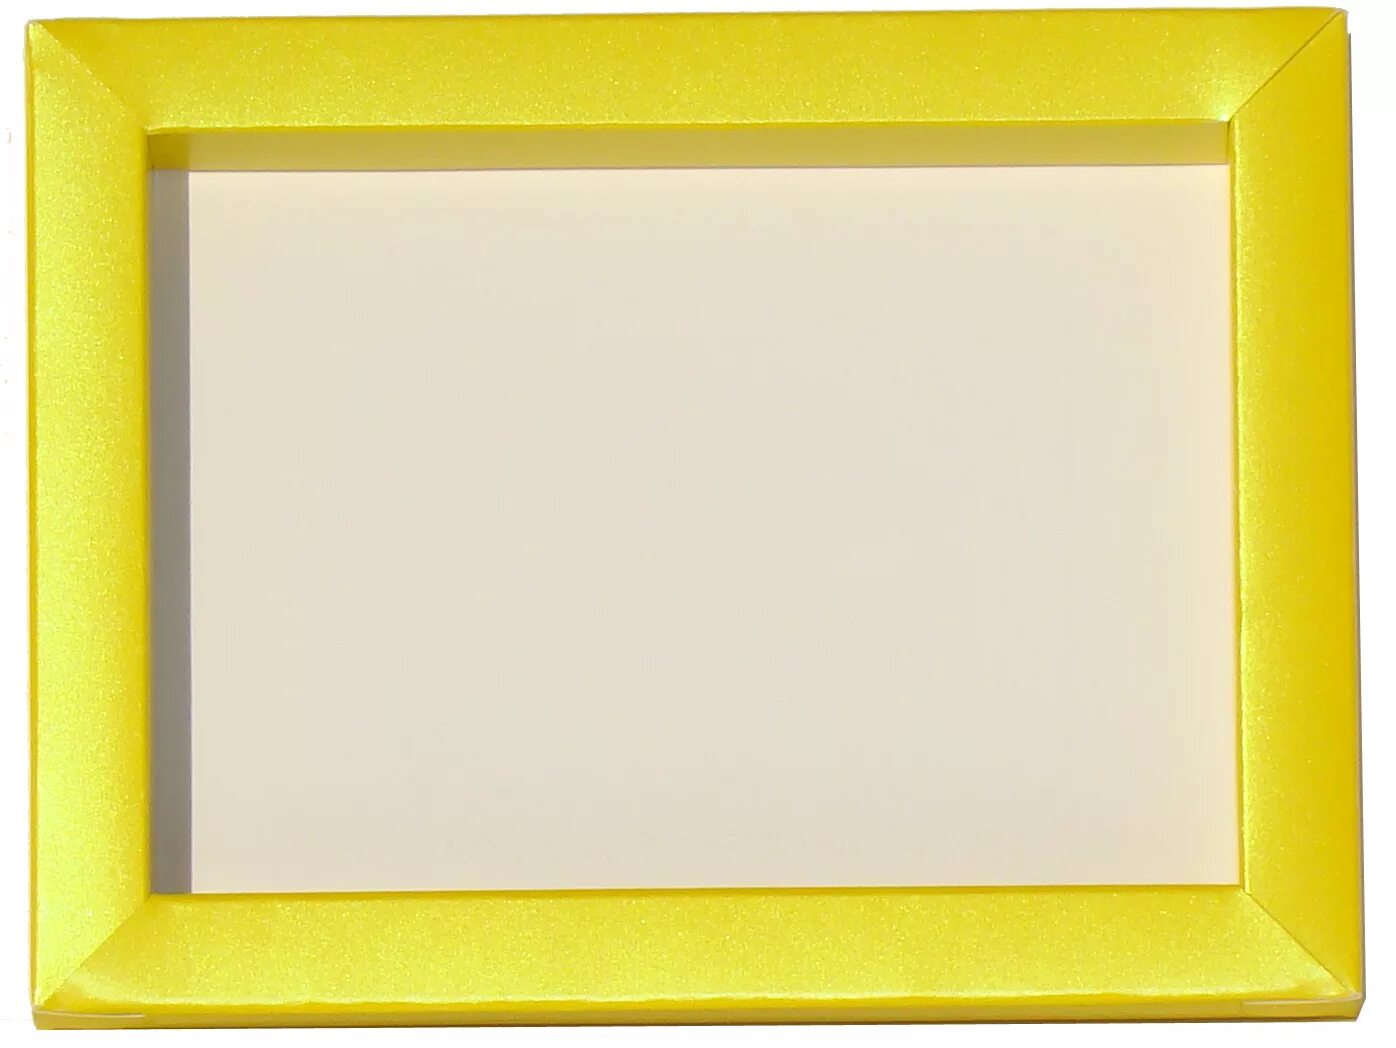 Желтая рамка вокруг экрана. Фоторамка желтая. Желтая рамка для фотографий. Рамка жетлвя. Желтая рамка для картины.